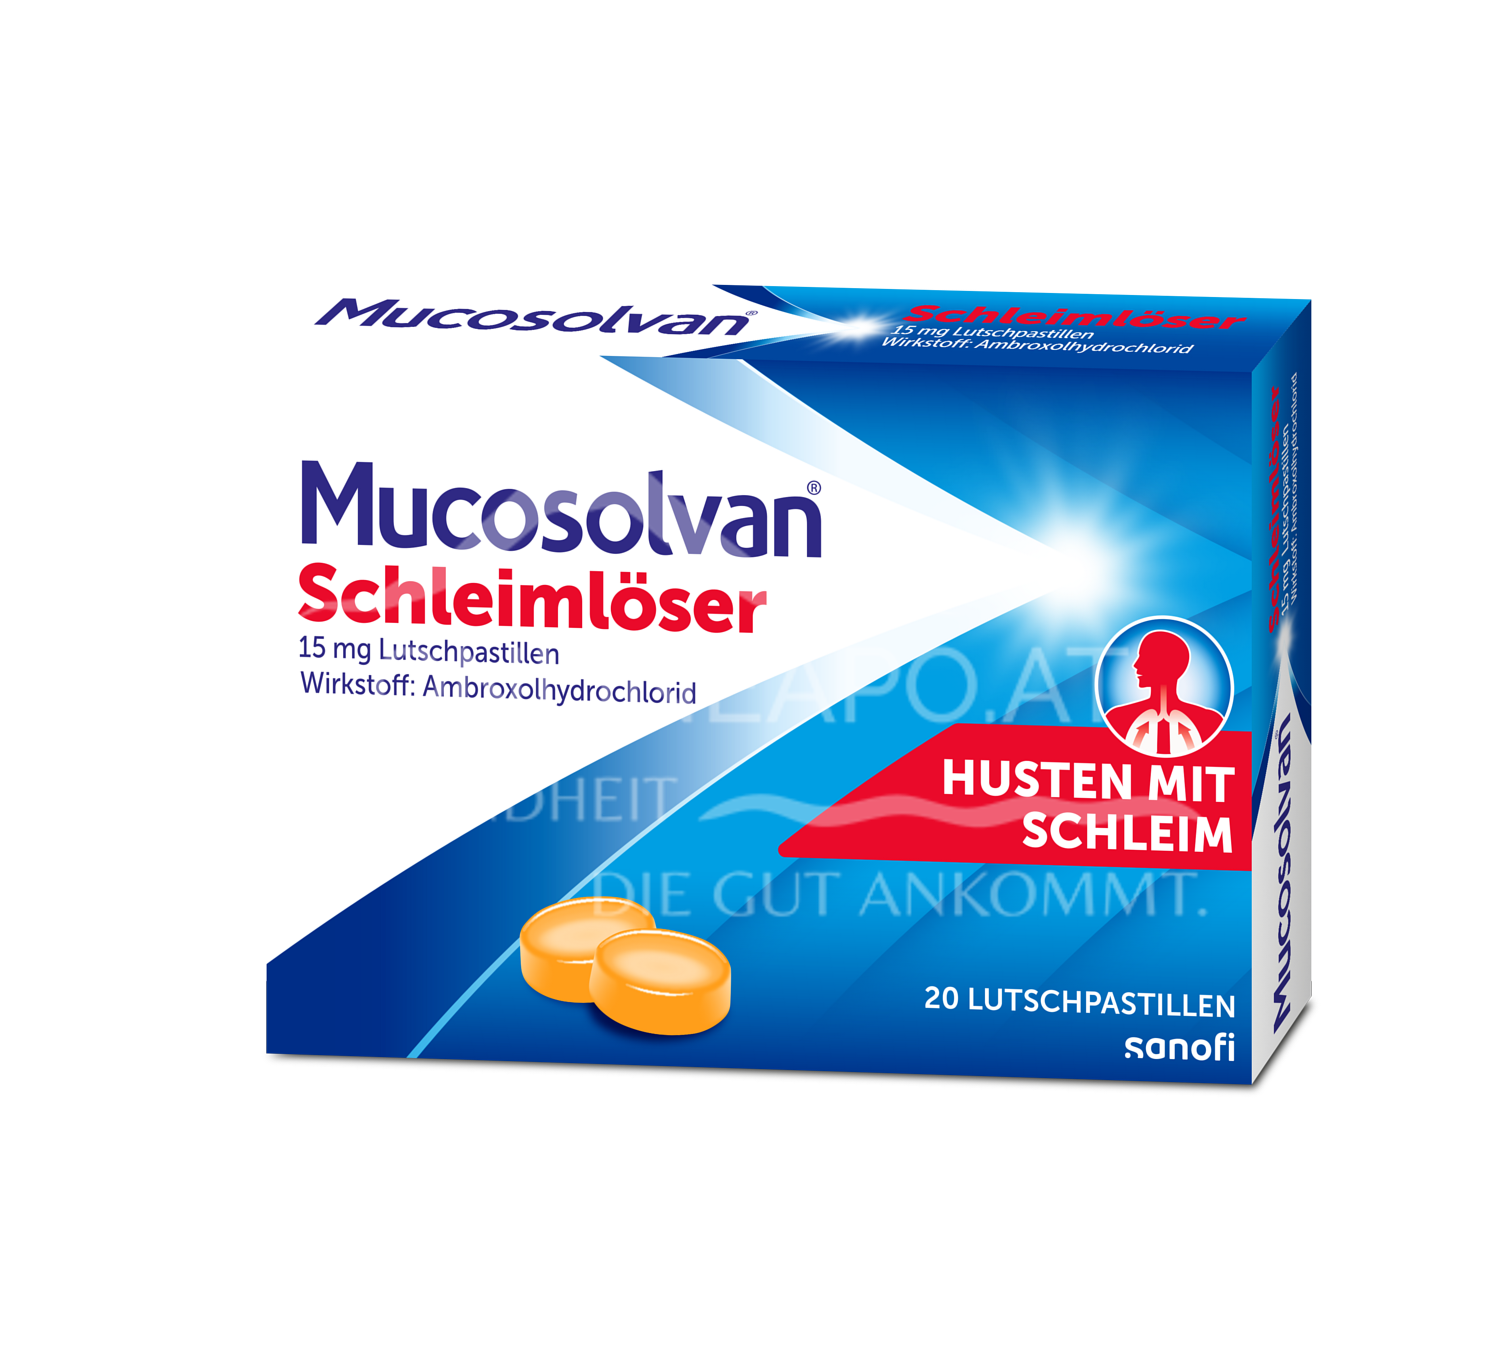 Mucosolvan® Schleimlöser 15 mg Lutschpastillen